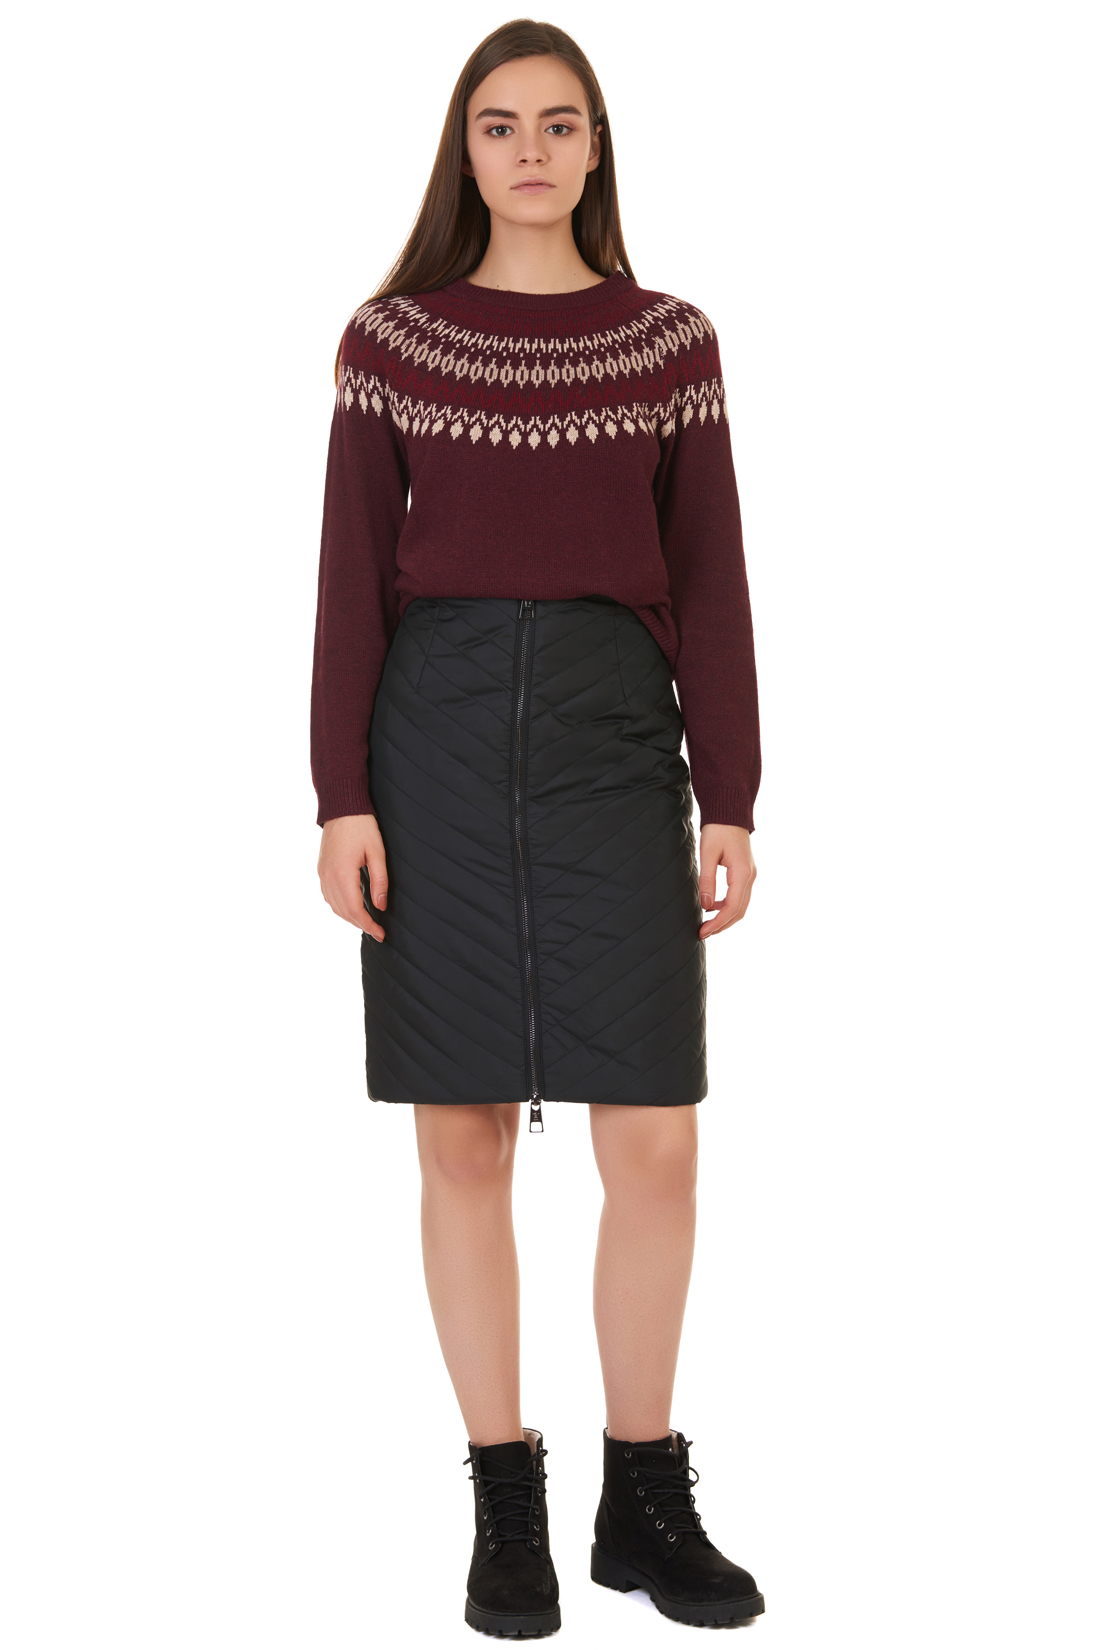 Утеплённая юбка (арт. baon B477502), размер XL, цвет черный Утеплённая юбка (арт. baon B477502) - фото 1